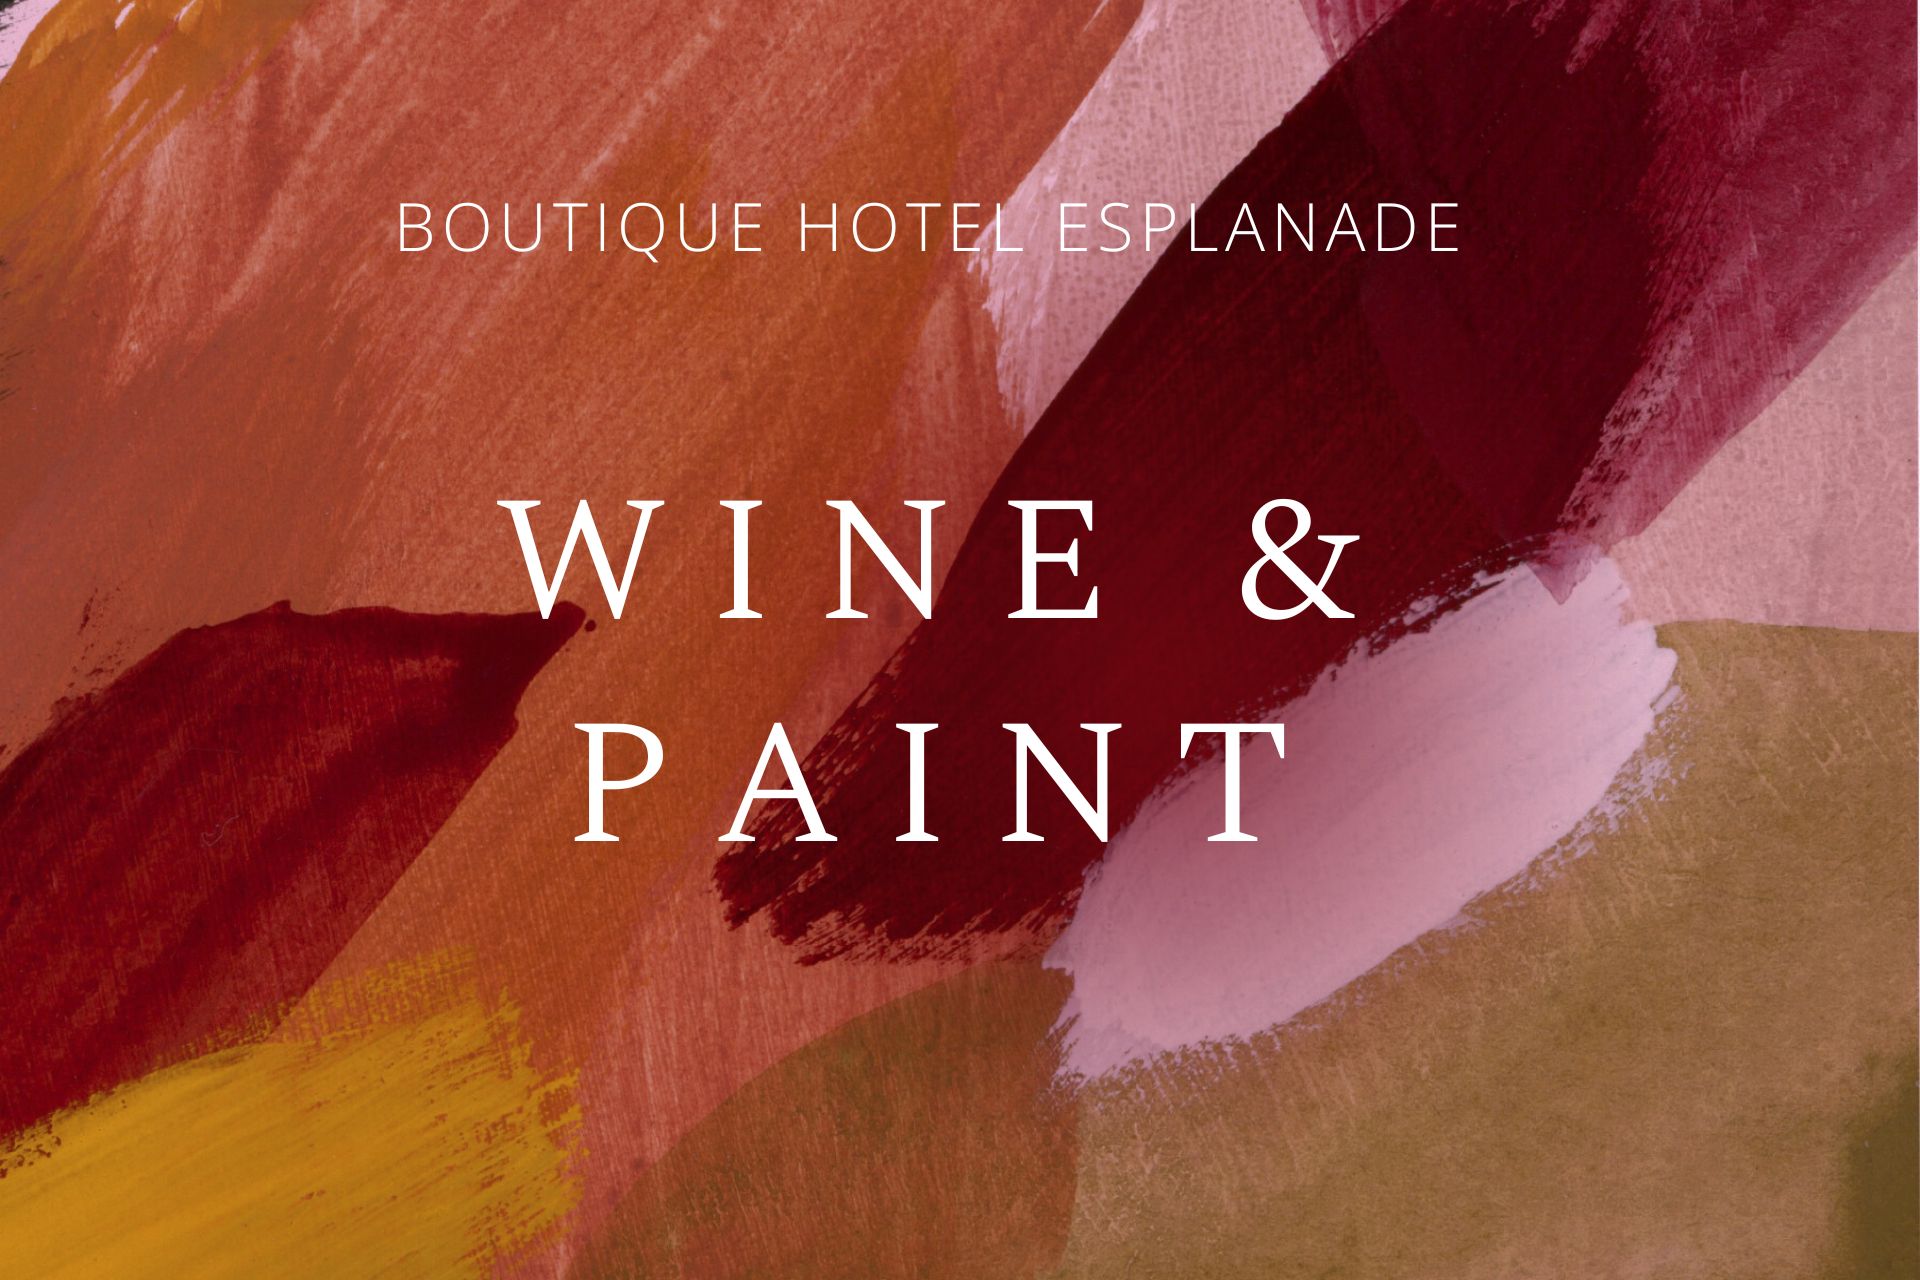 Pozivamo vas na jedinstveni "Wine & Paint" događaj u Boutique hotelu Esplanade